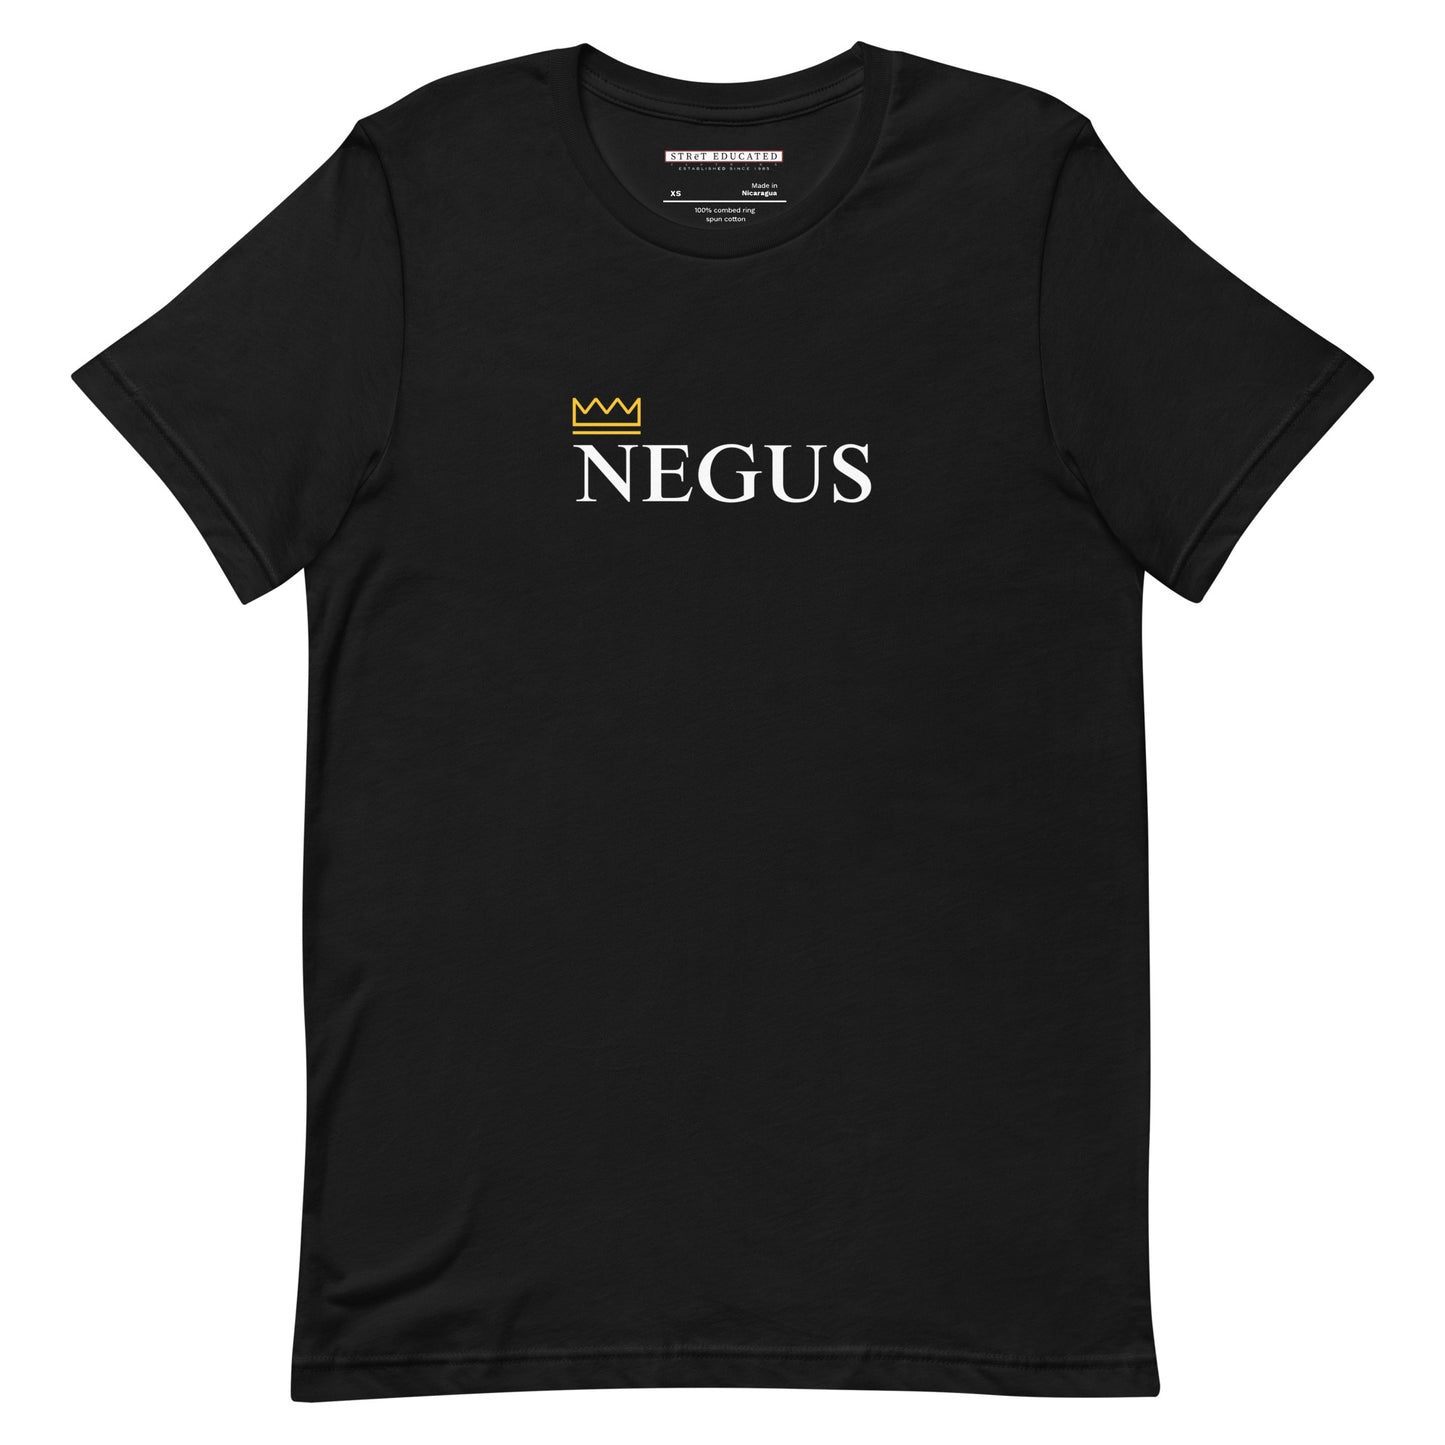 NEGUS t-shirt